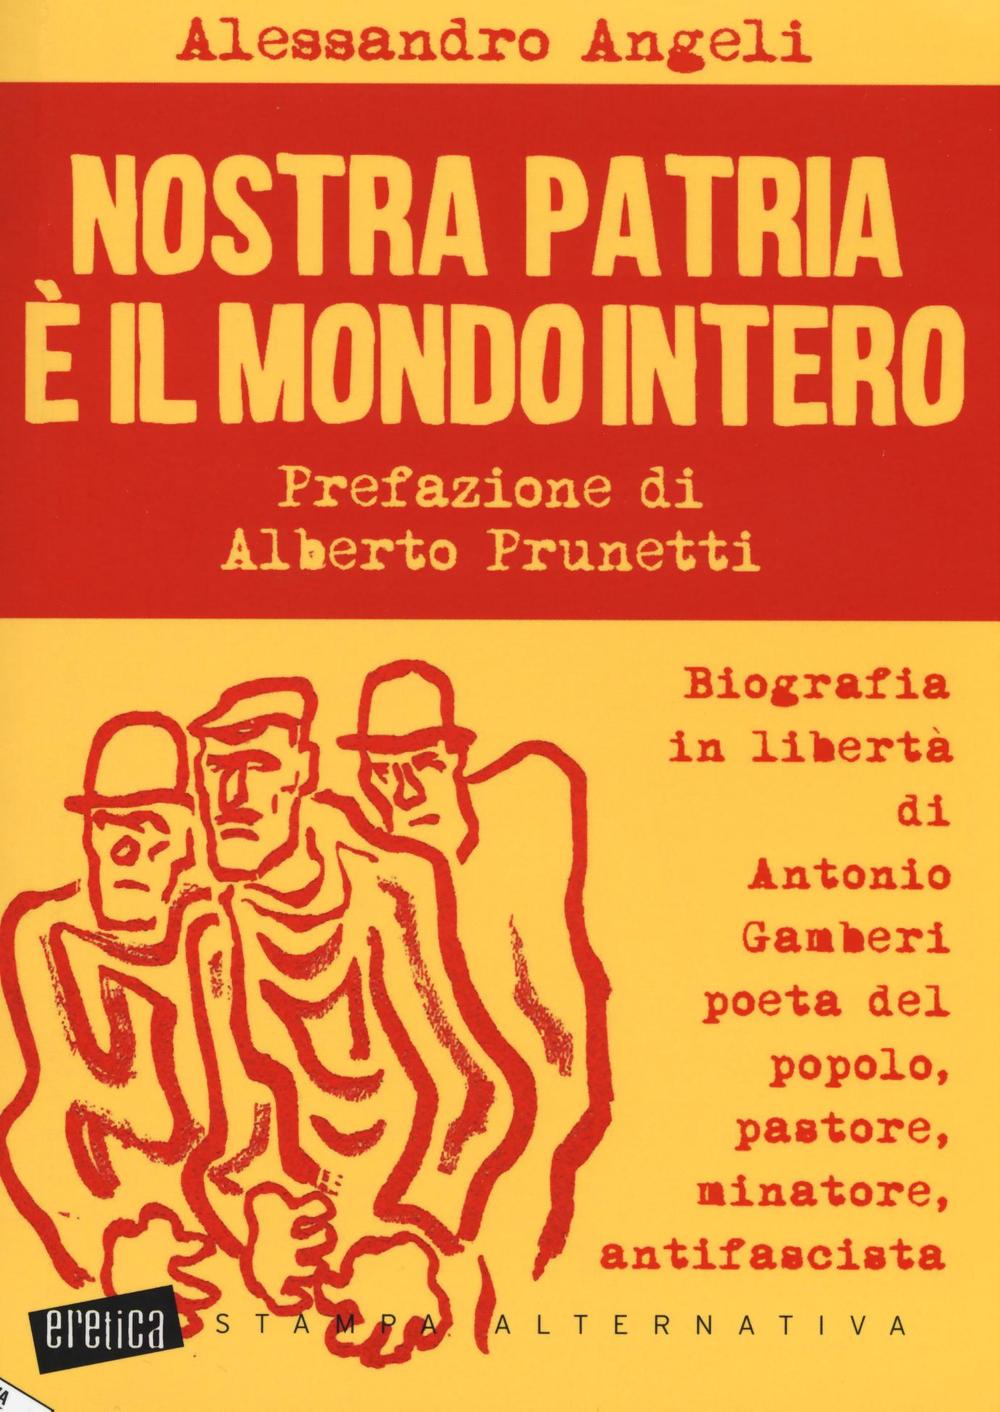 Nostra patria è il mondo intero. Biografia in libertà di Antonio Gamberi poeta del popolo, pastore, minatore, antifascista